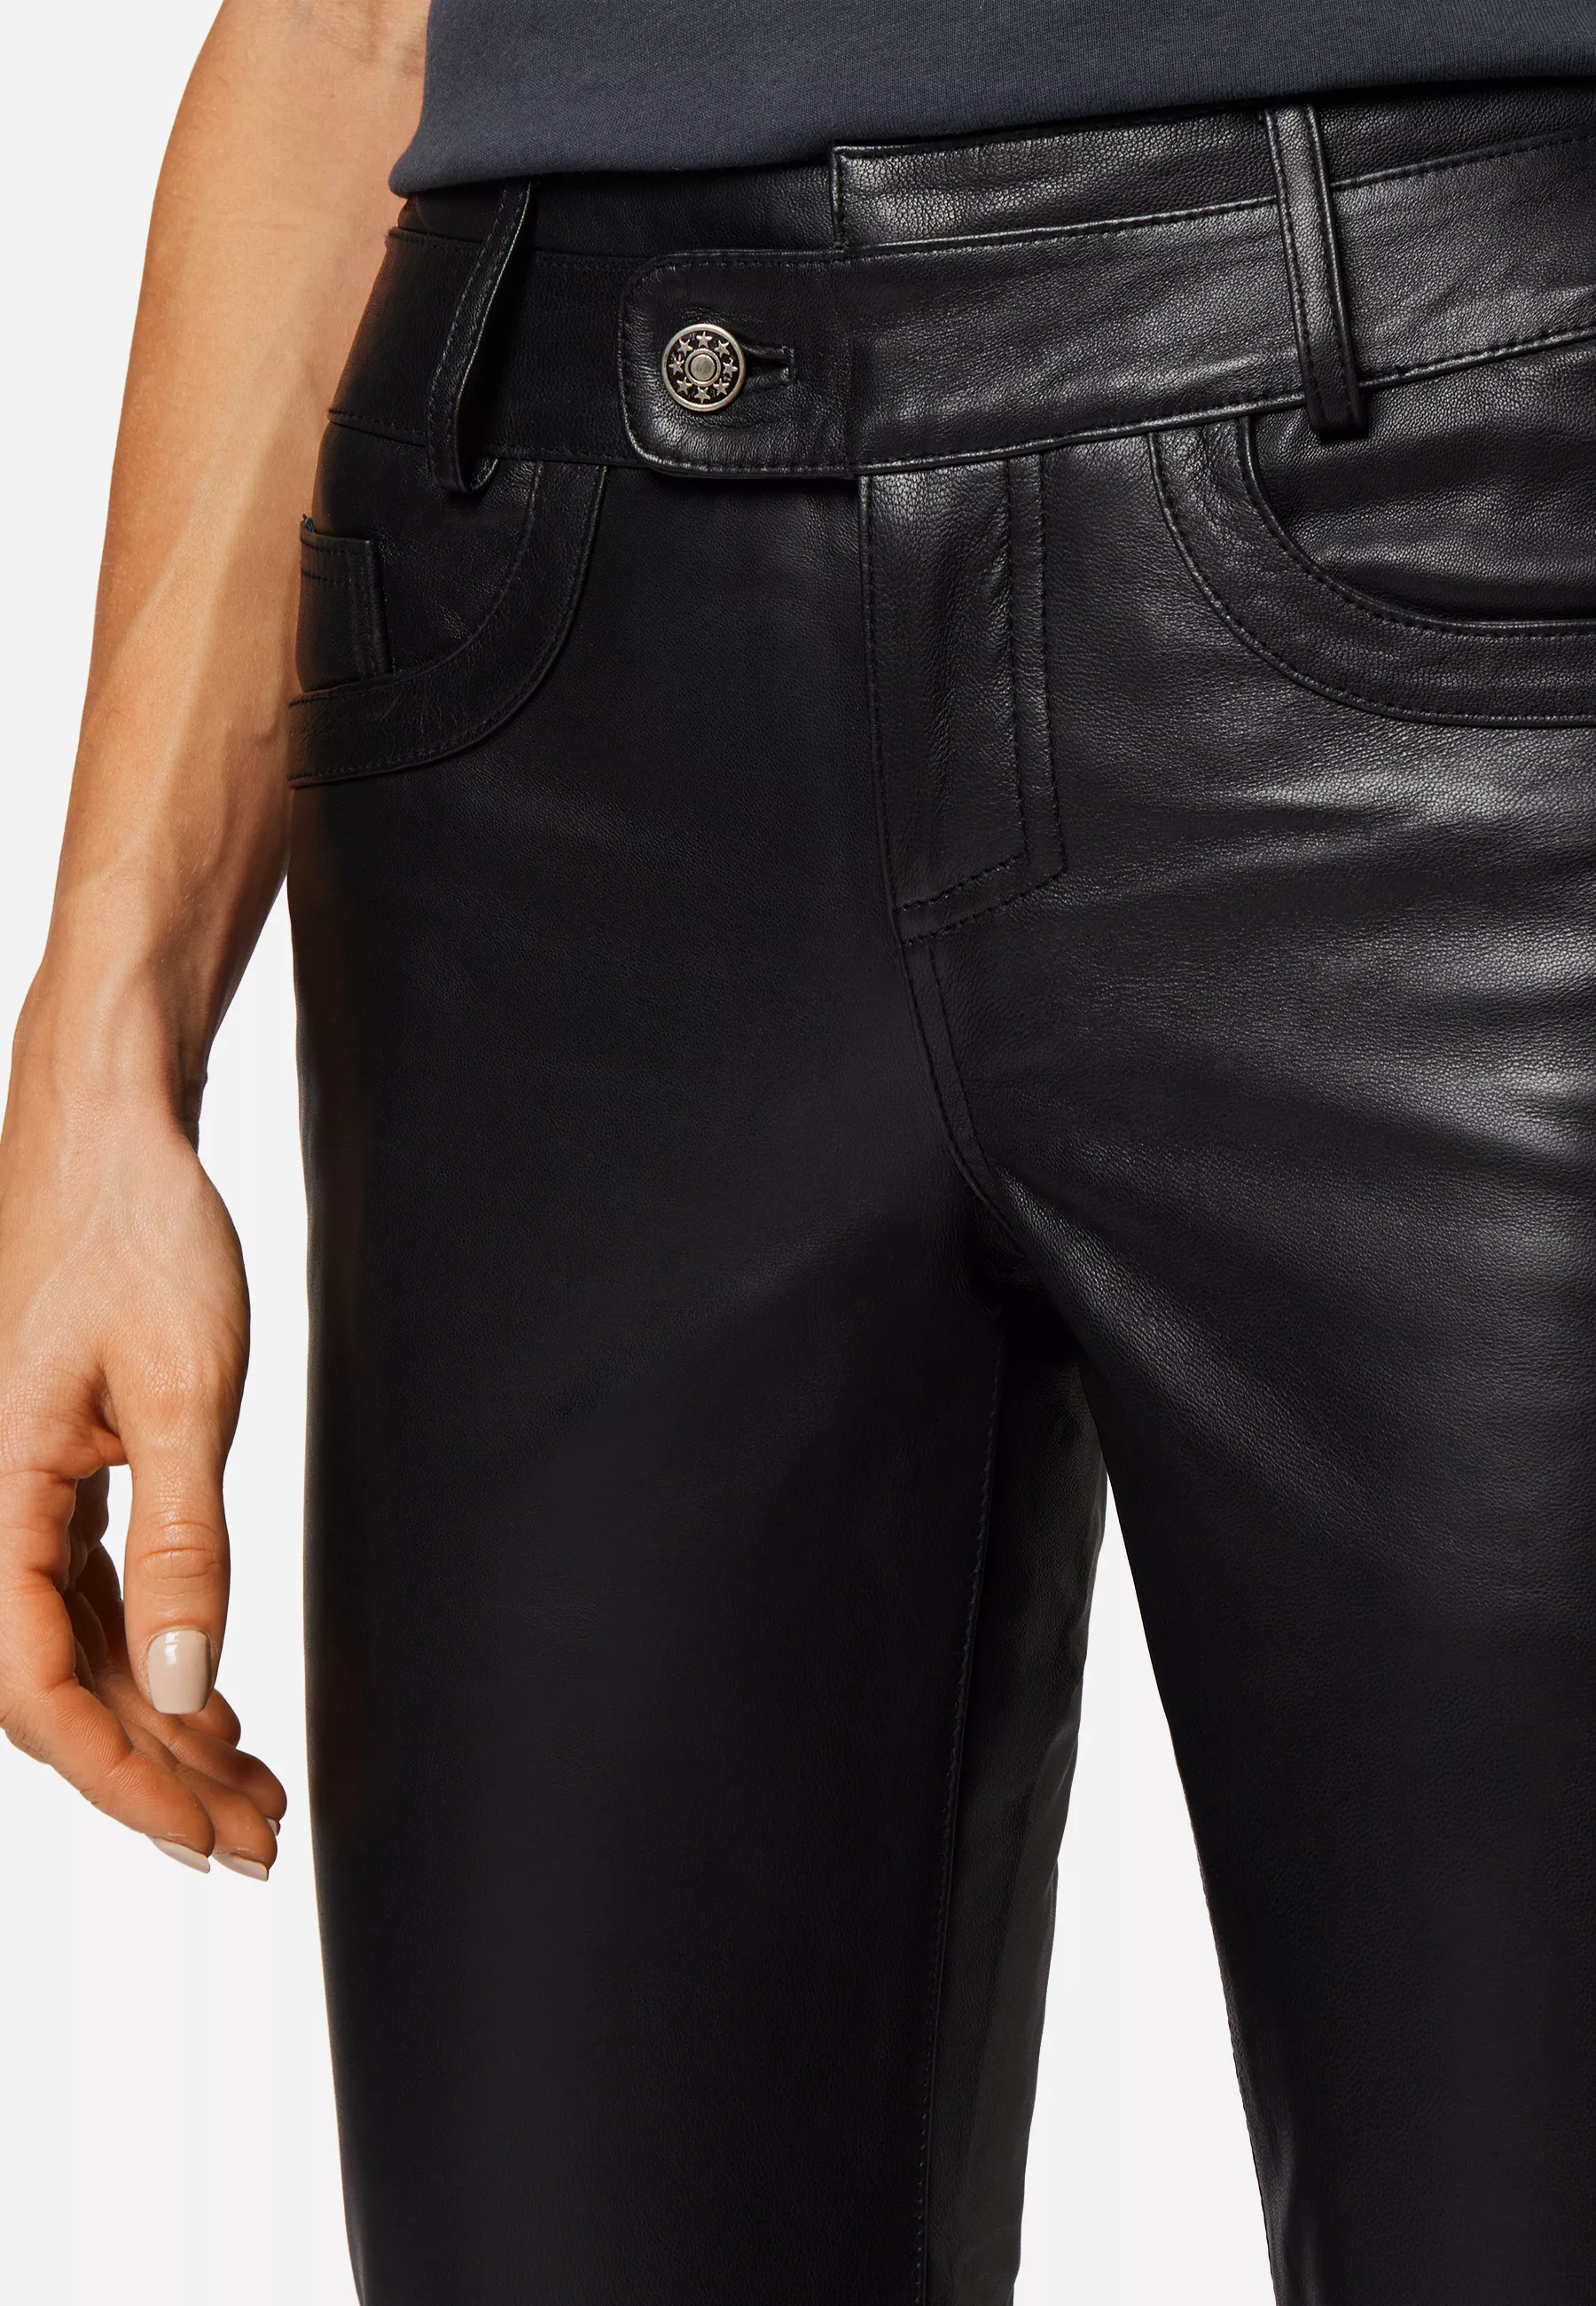 Damen Lederhose Triston-B in Schwarz von Ricano, Detailansicht vom Bund und Taschen vorne am Model